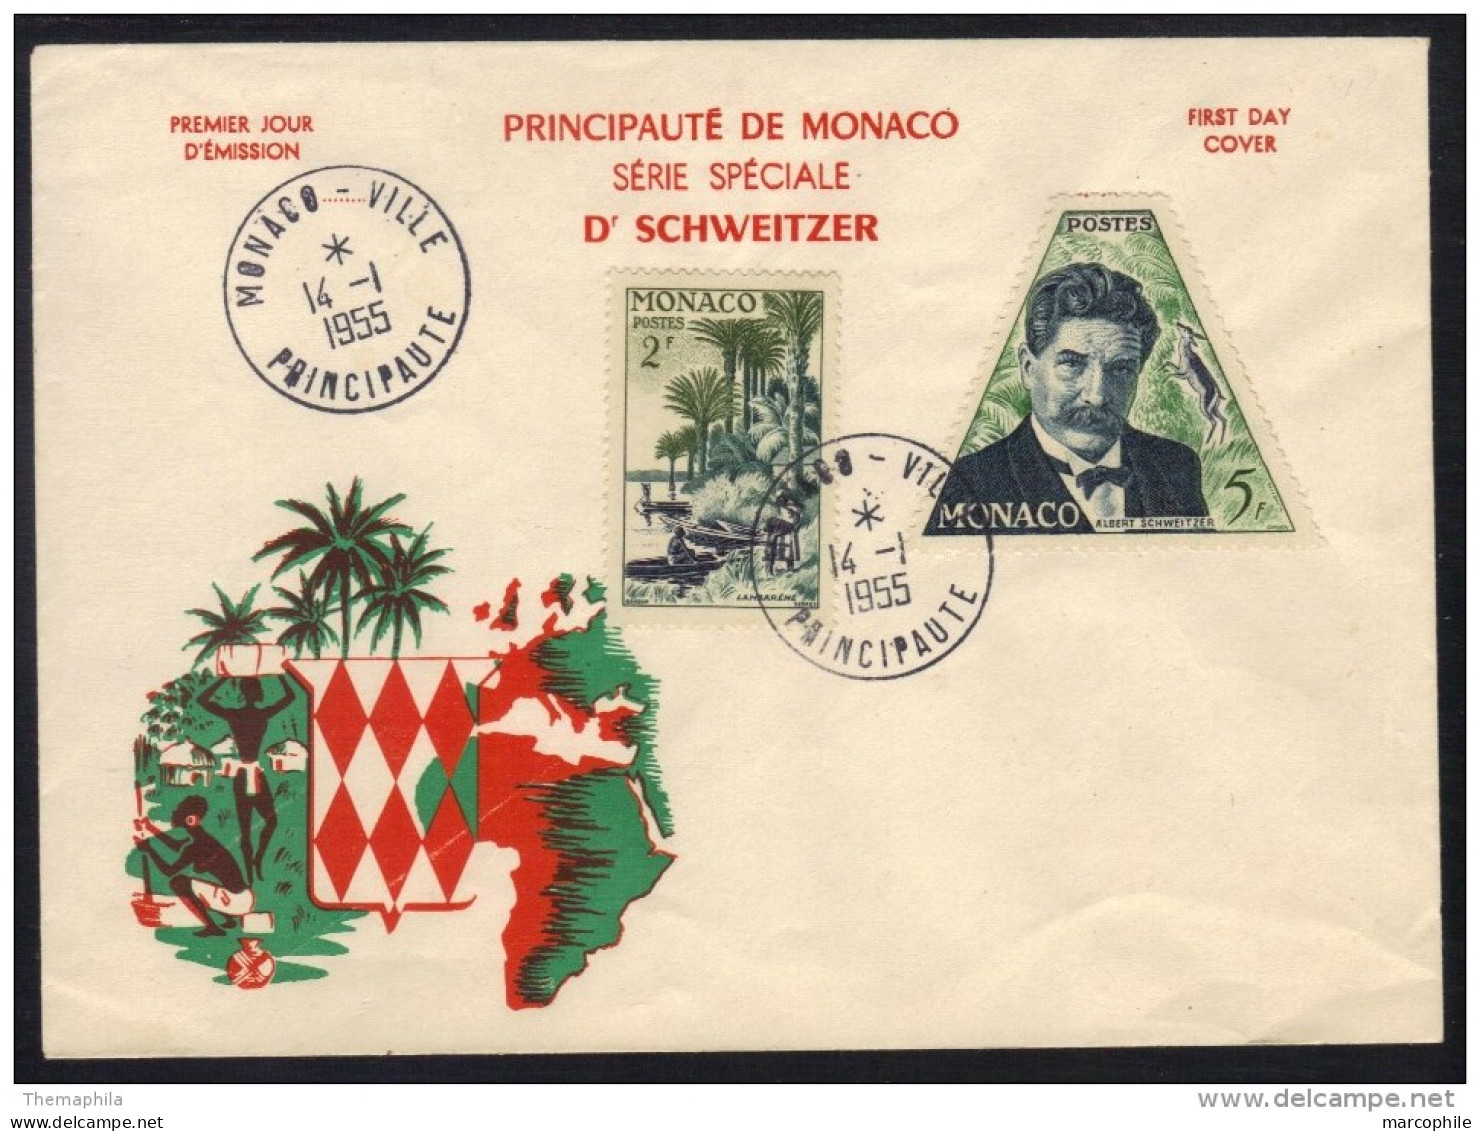 ALBERT SCHWEITZER - PRIX NOBEL / 1955 MONACO ENVELOPPE PREMIER JOUR - FDC (ref 6930) - Albert Schweitzer